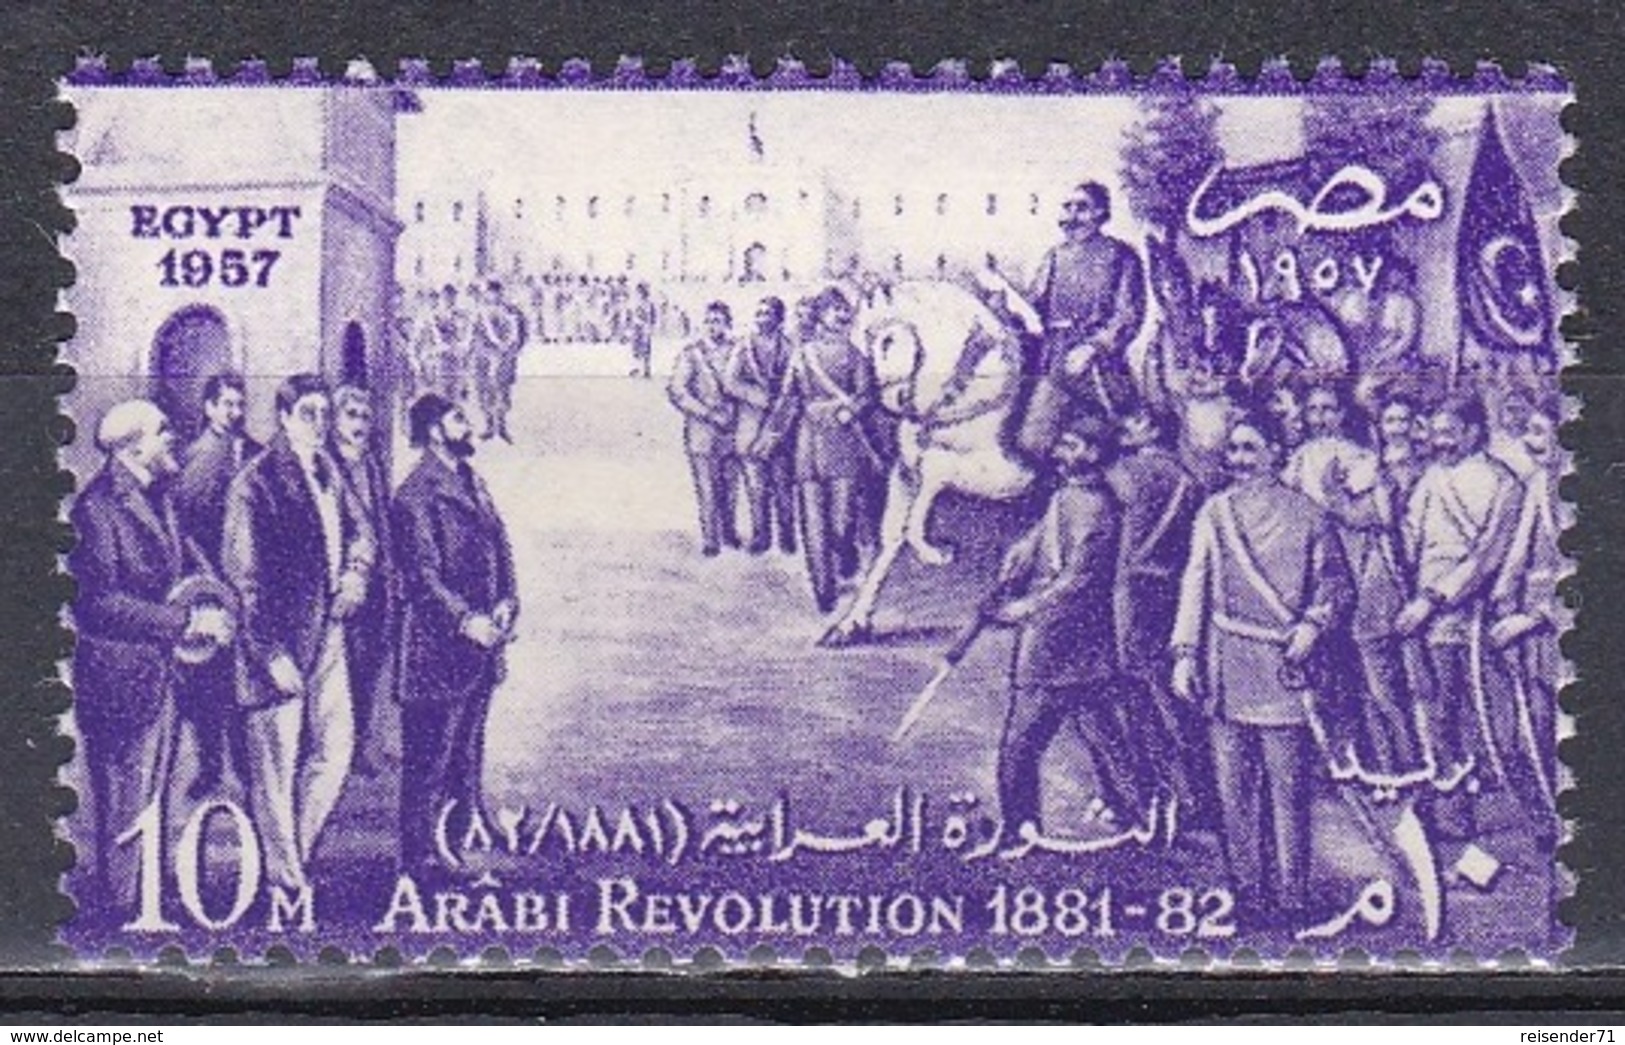 Ägypten Egypt 1957 Geschichte History Revolution Erhebung Armee Army Persönlichkeiten Ahmed Arabi, Mi. 516 ** - Ungebraucht